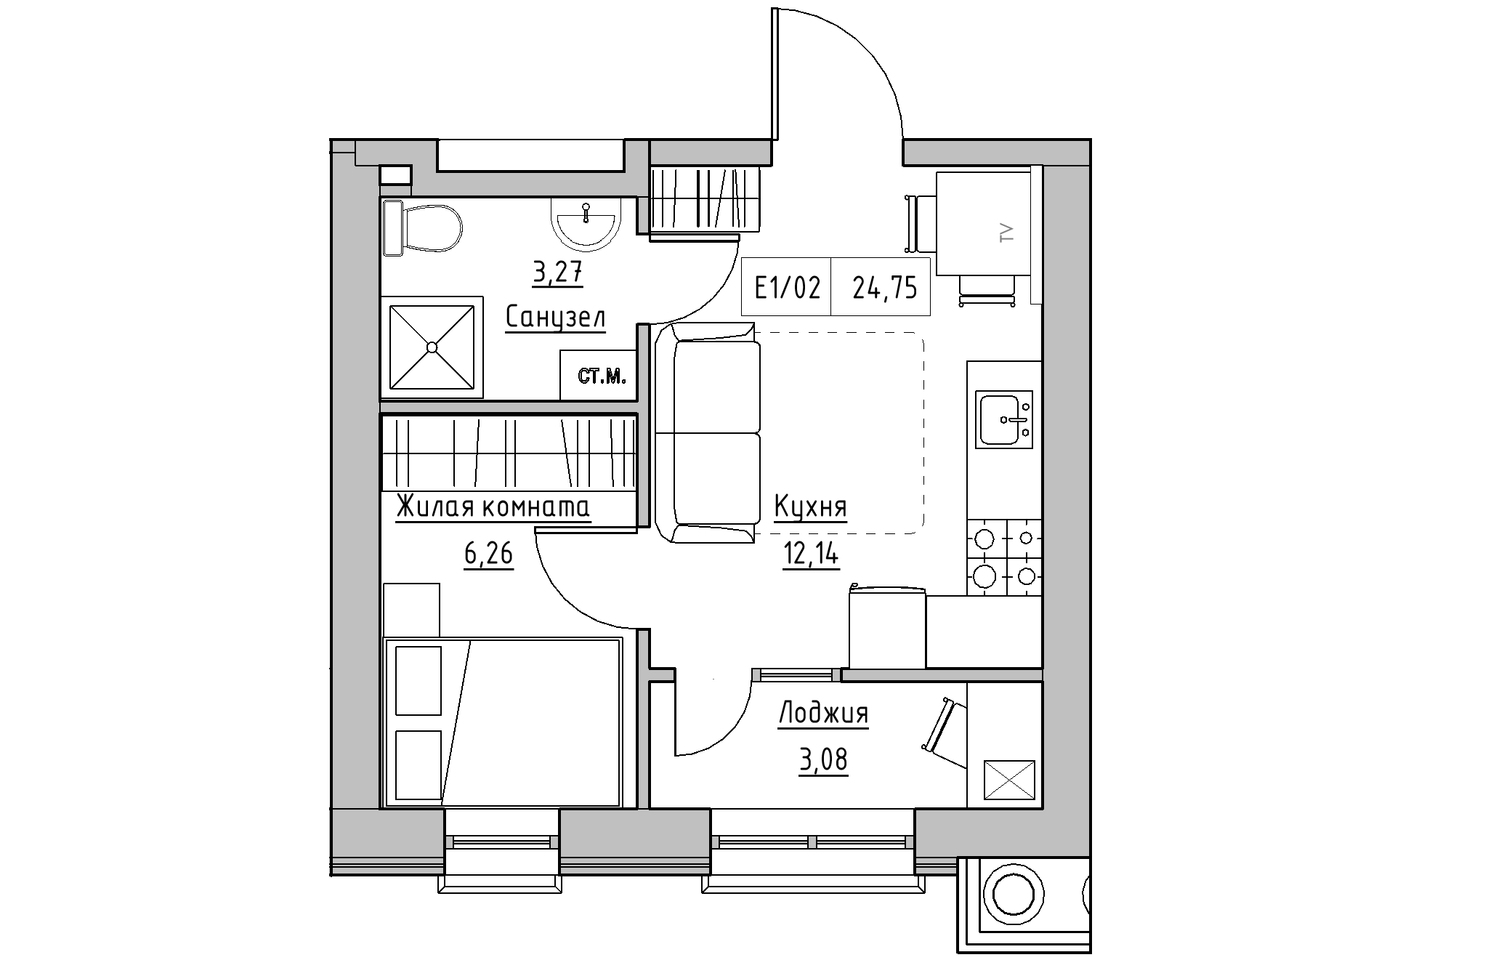 Планування 1-к квартира площею 24.69м2, KS-010-05/0002.